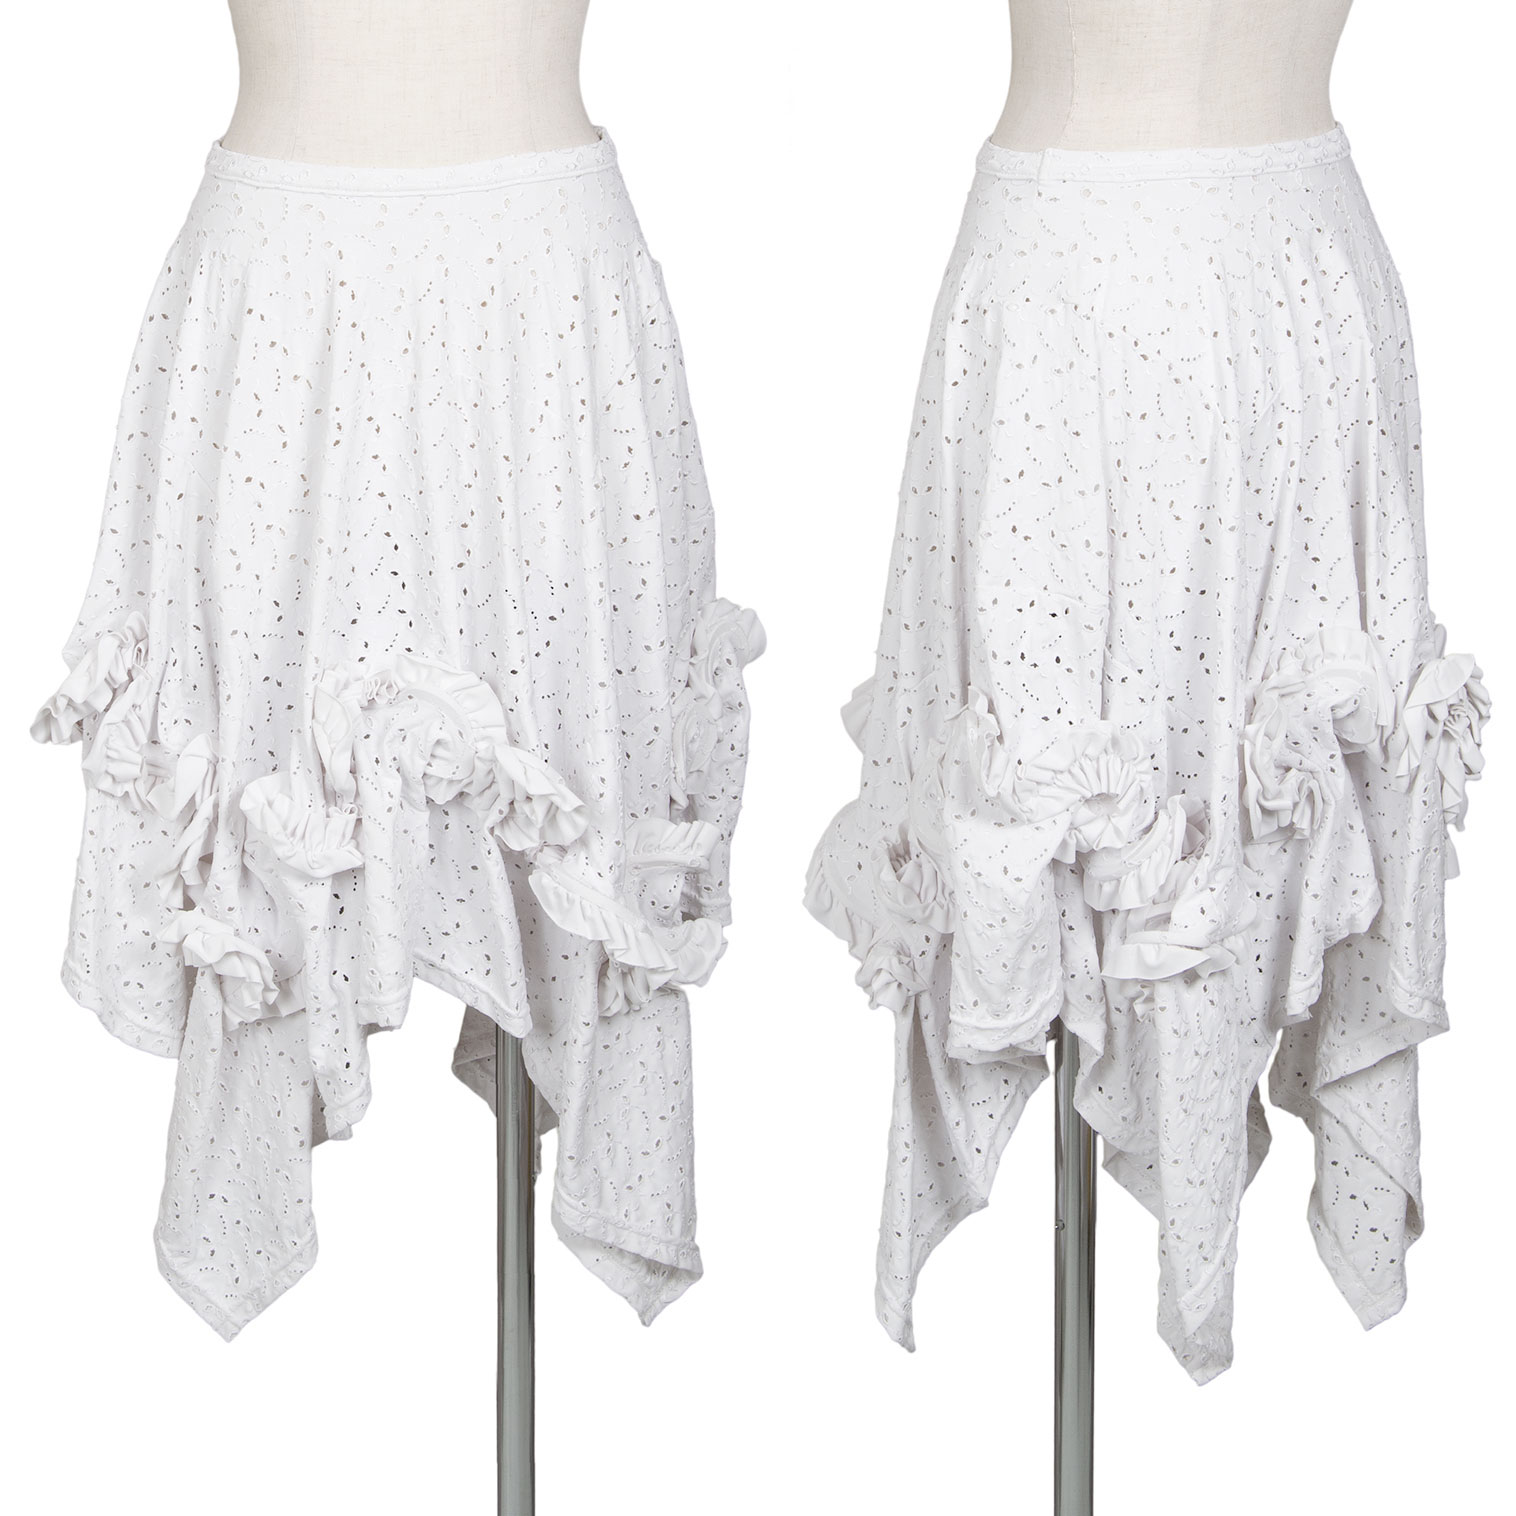 再出品しなおしました【新品 美品】COMME des GARCONS 白スカート